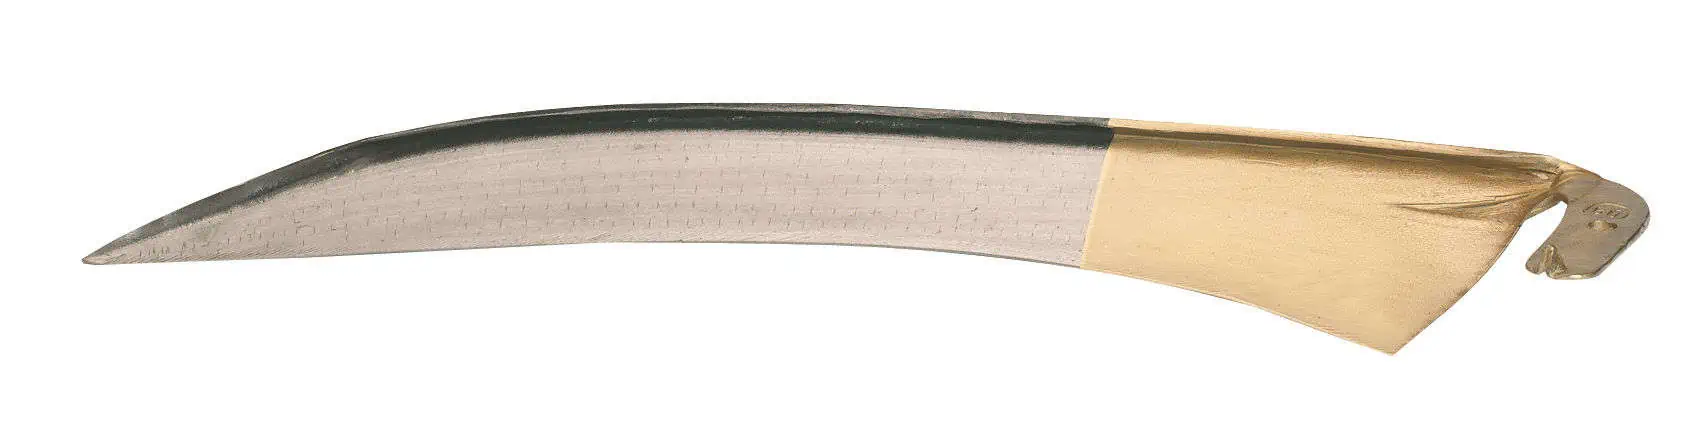 Whetstone Scythe 60 cm, hand-forged